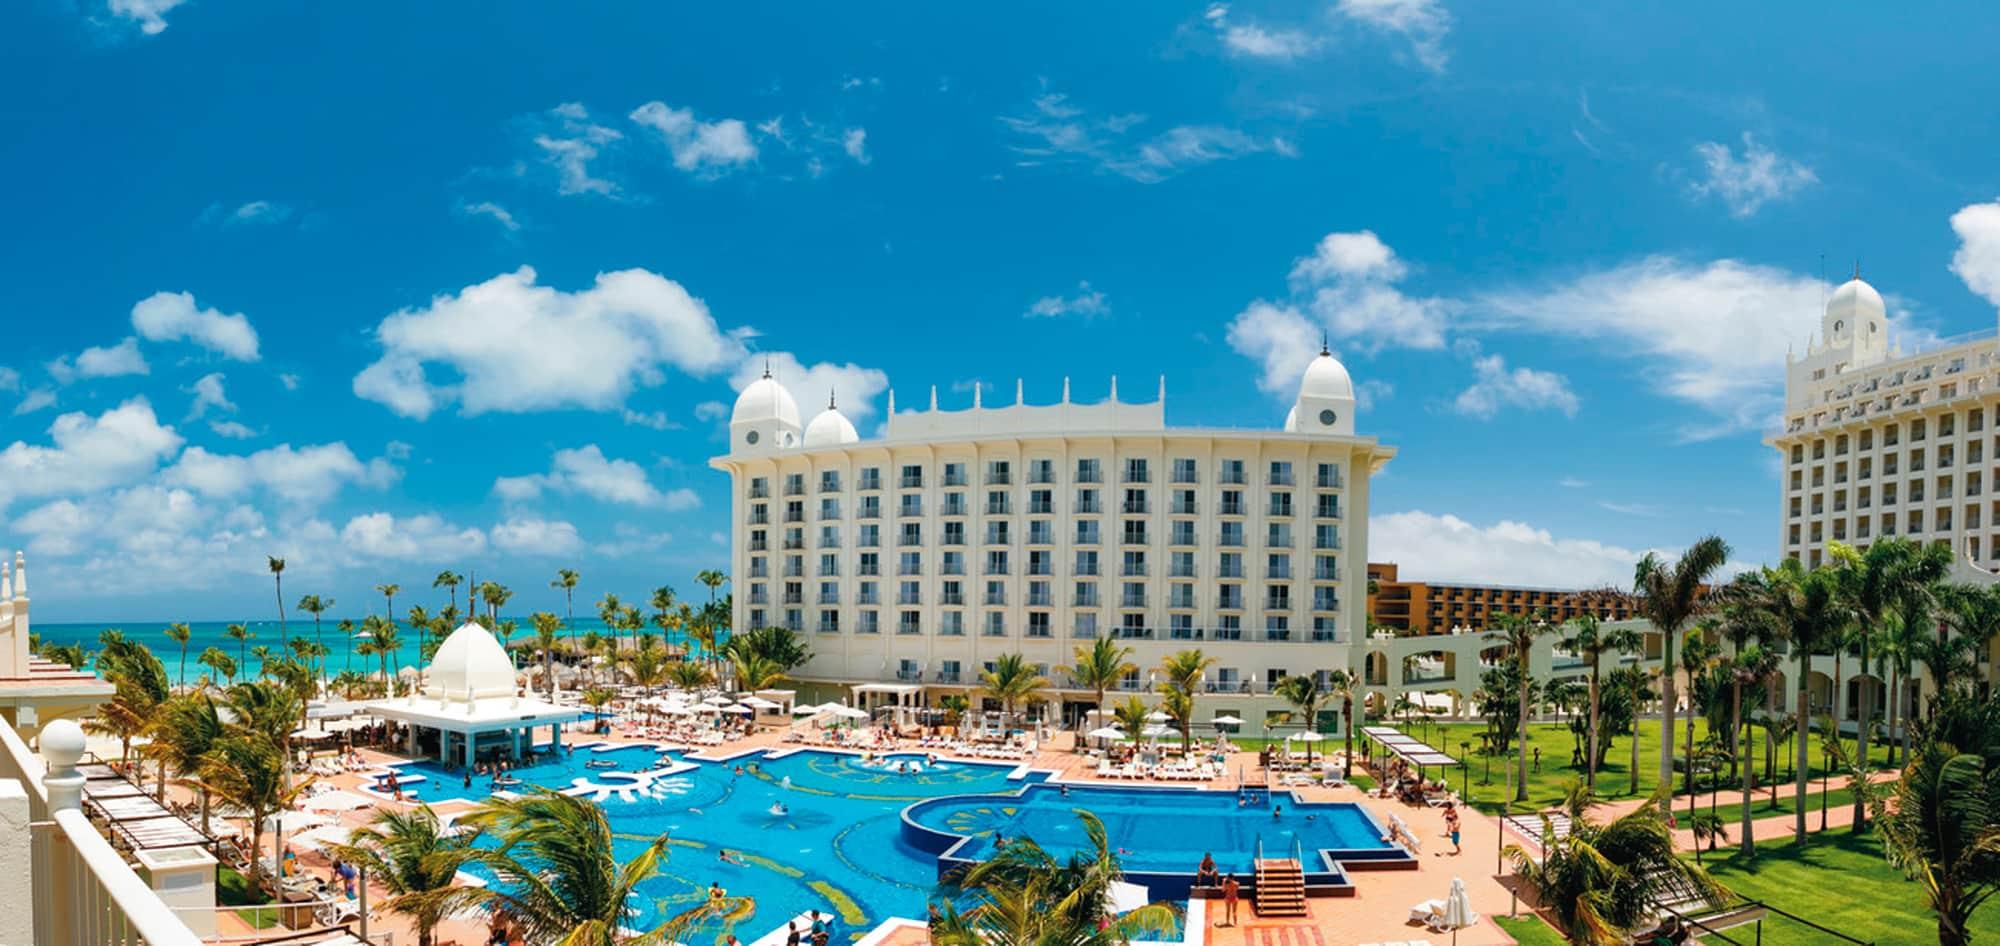 Hotel Riu Palace Aruba | All Inclusive Hotel Palm Beach2000 x 946